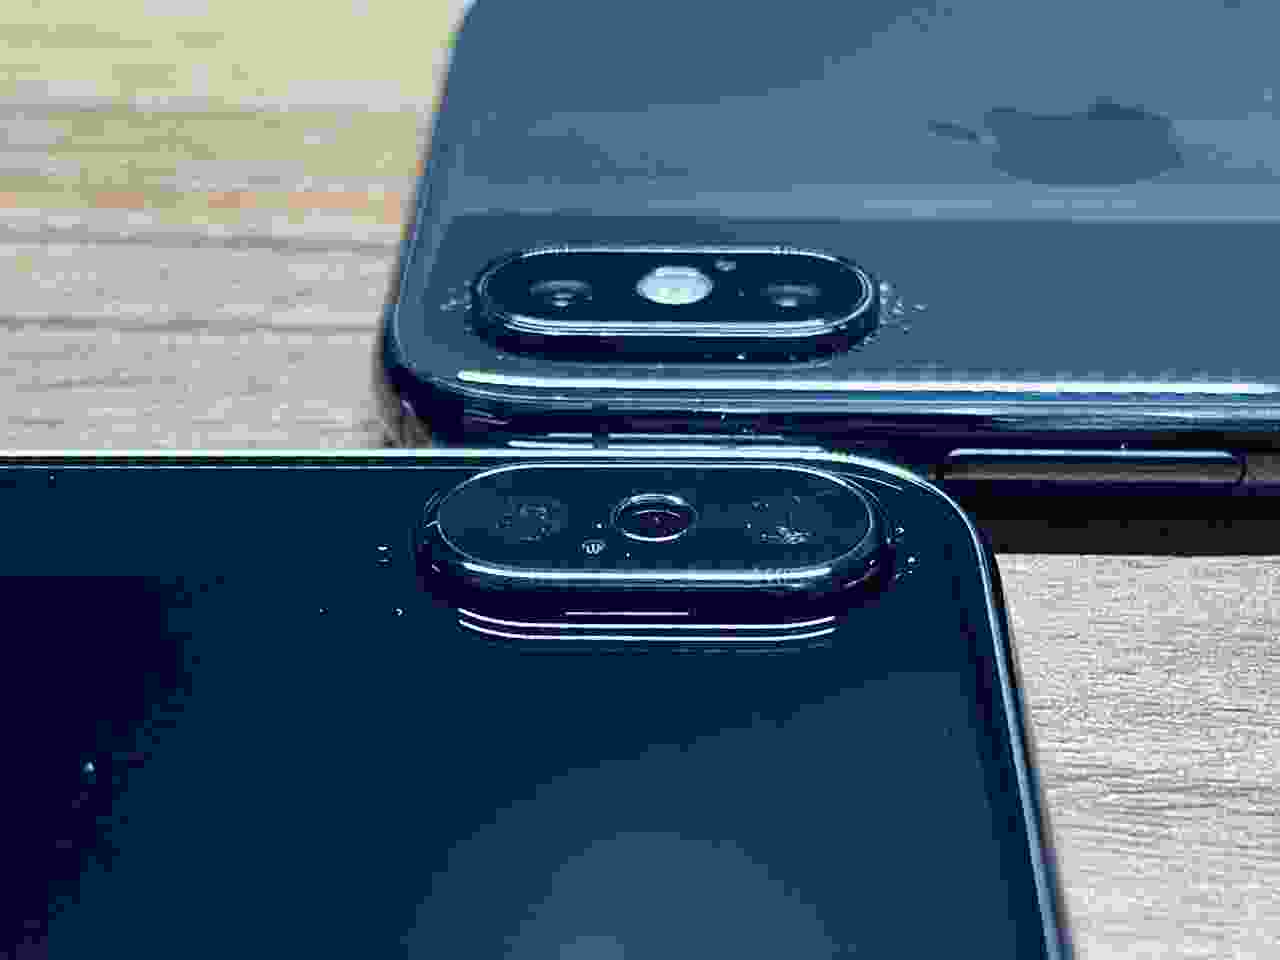 iPhone X màu đen: Chiếc iPhone X màu đen vô cùng sang trọng và đầy quyền lực. Bạn sẽ không thể chối từ cơ hội ngắm nhìn thiết kế đẳng cấp của iPhone X màu đen trong bức ảnh này.